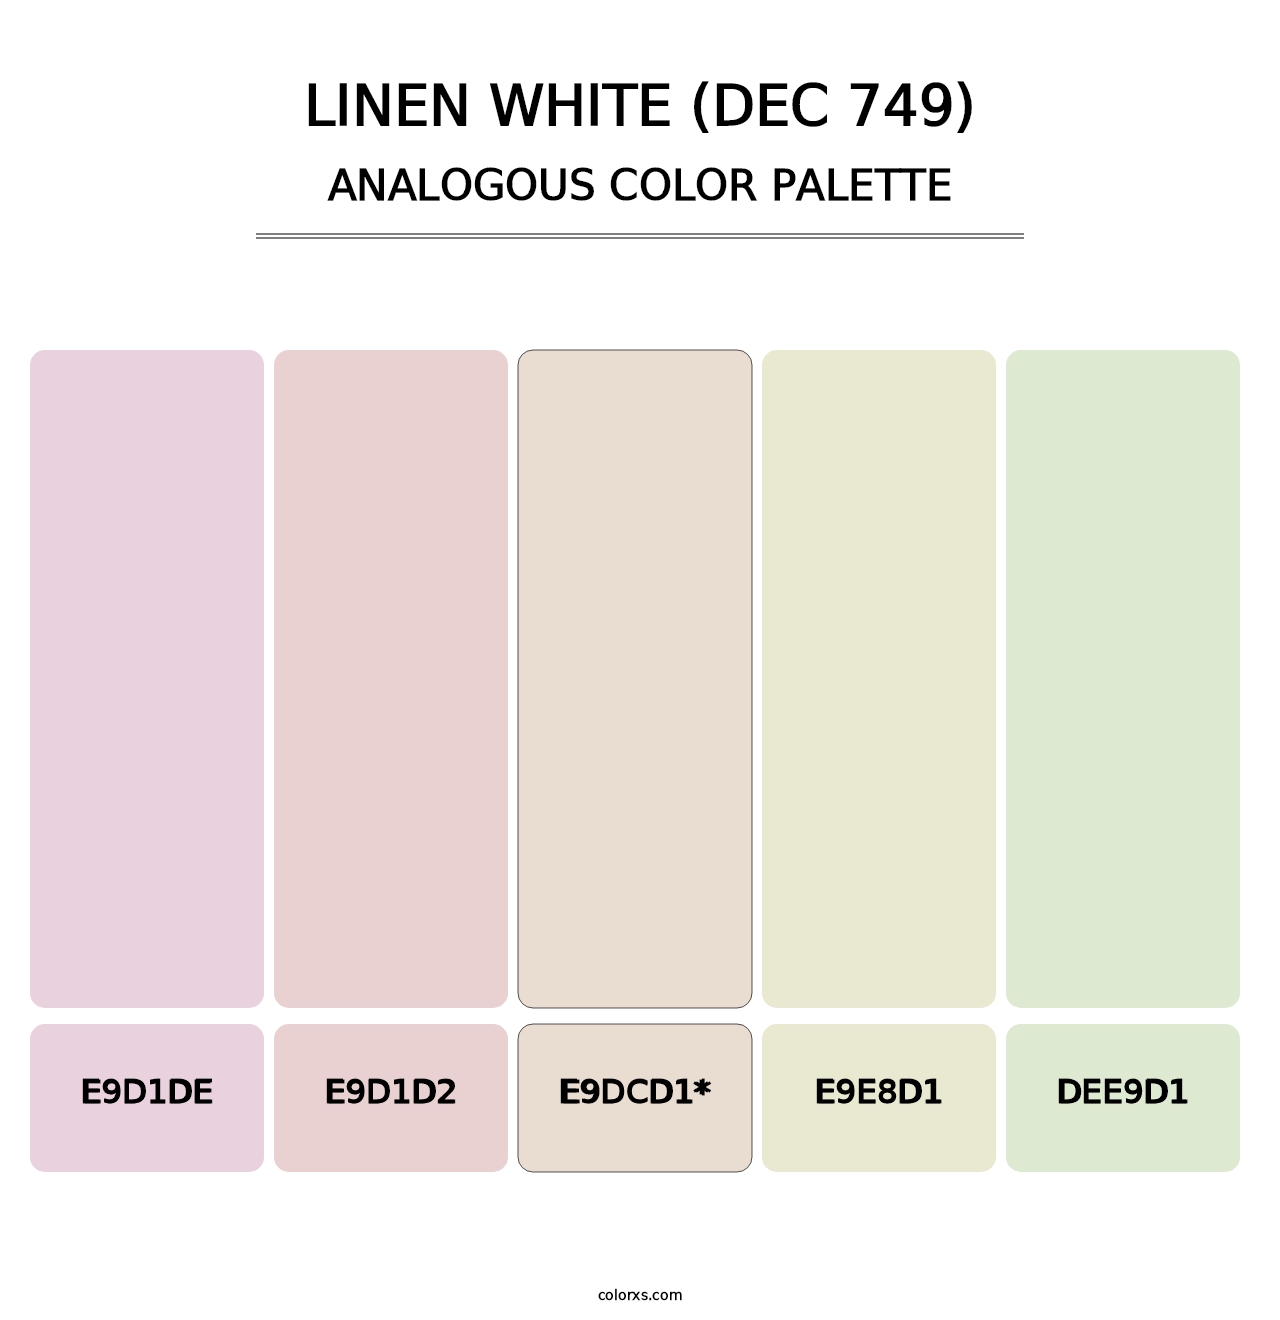 Linen White (DEC 749) - Analogous Color Palette